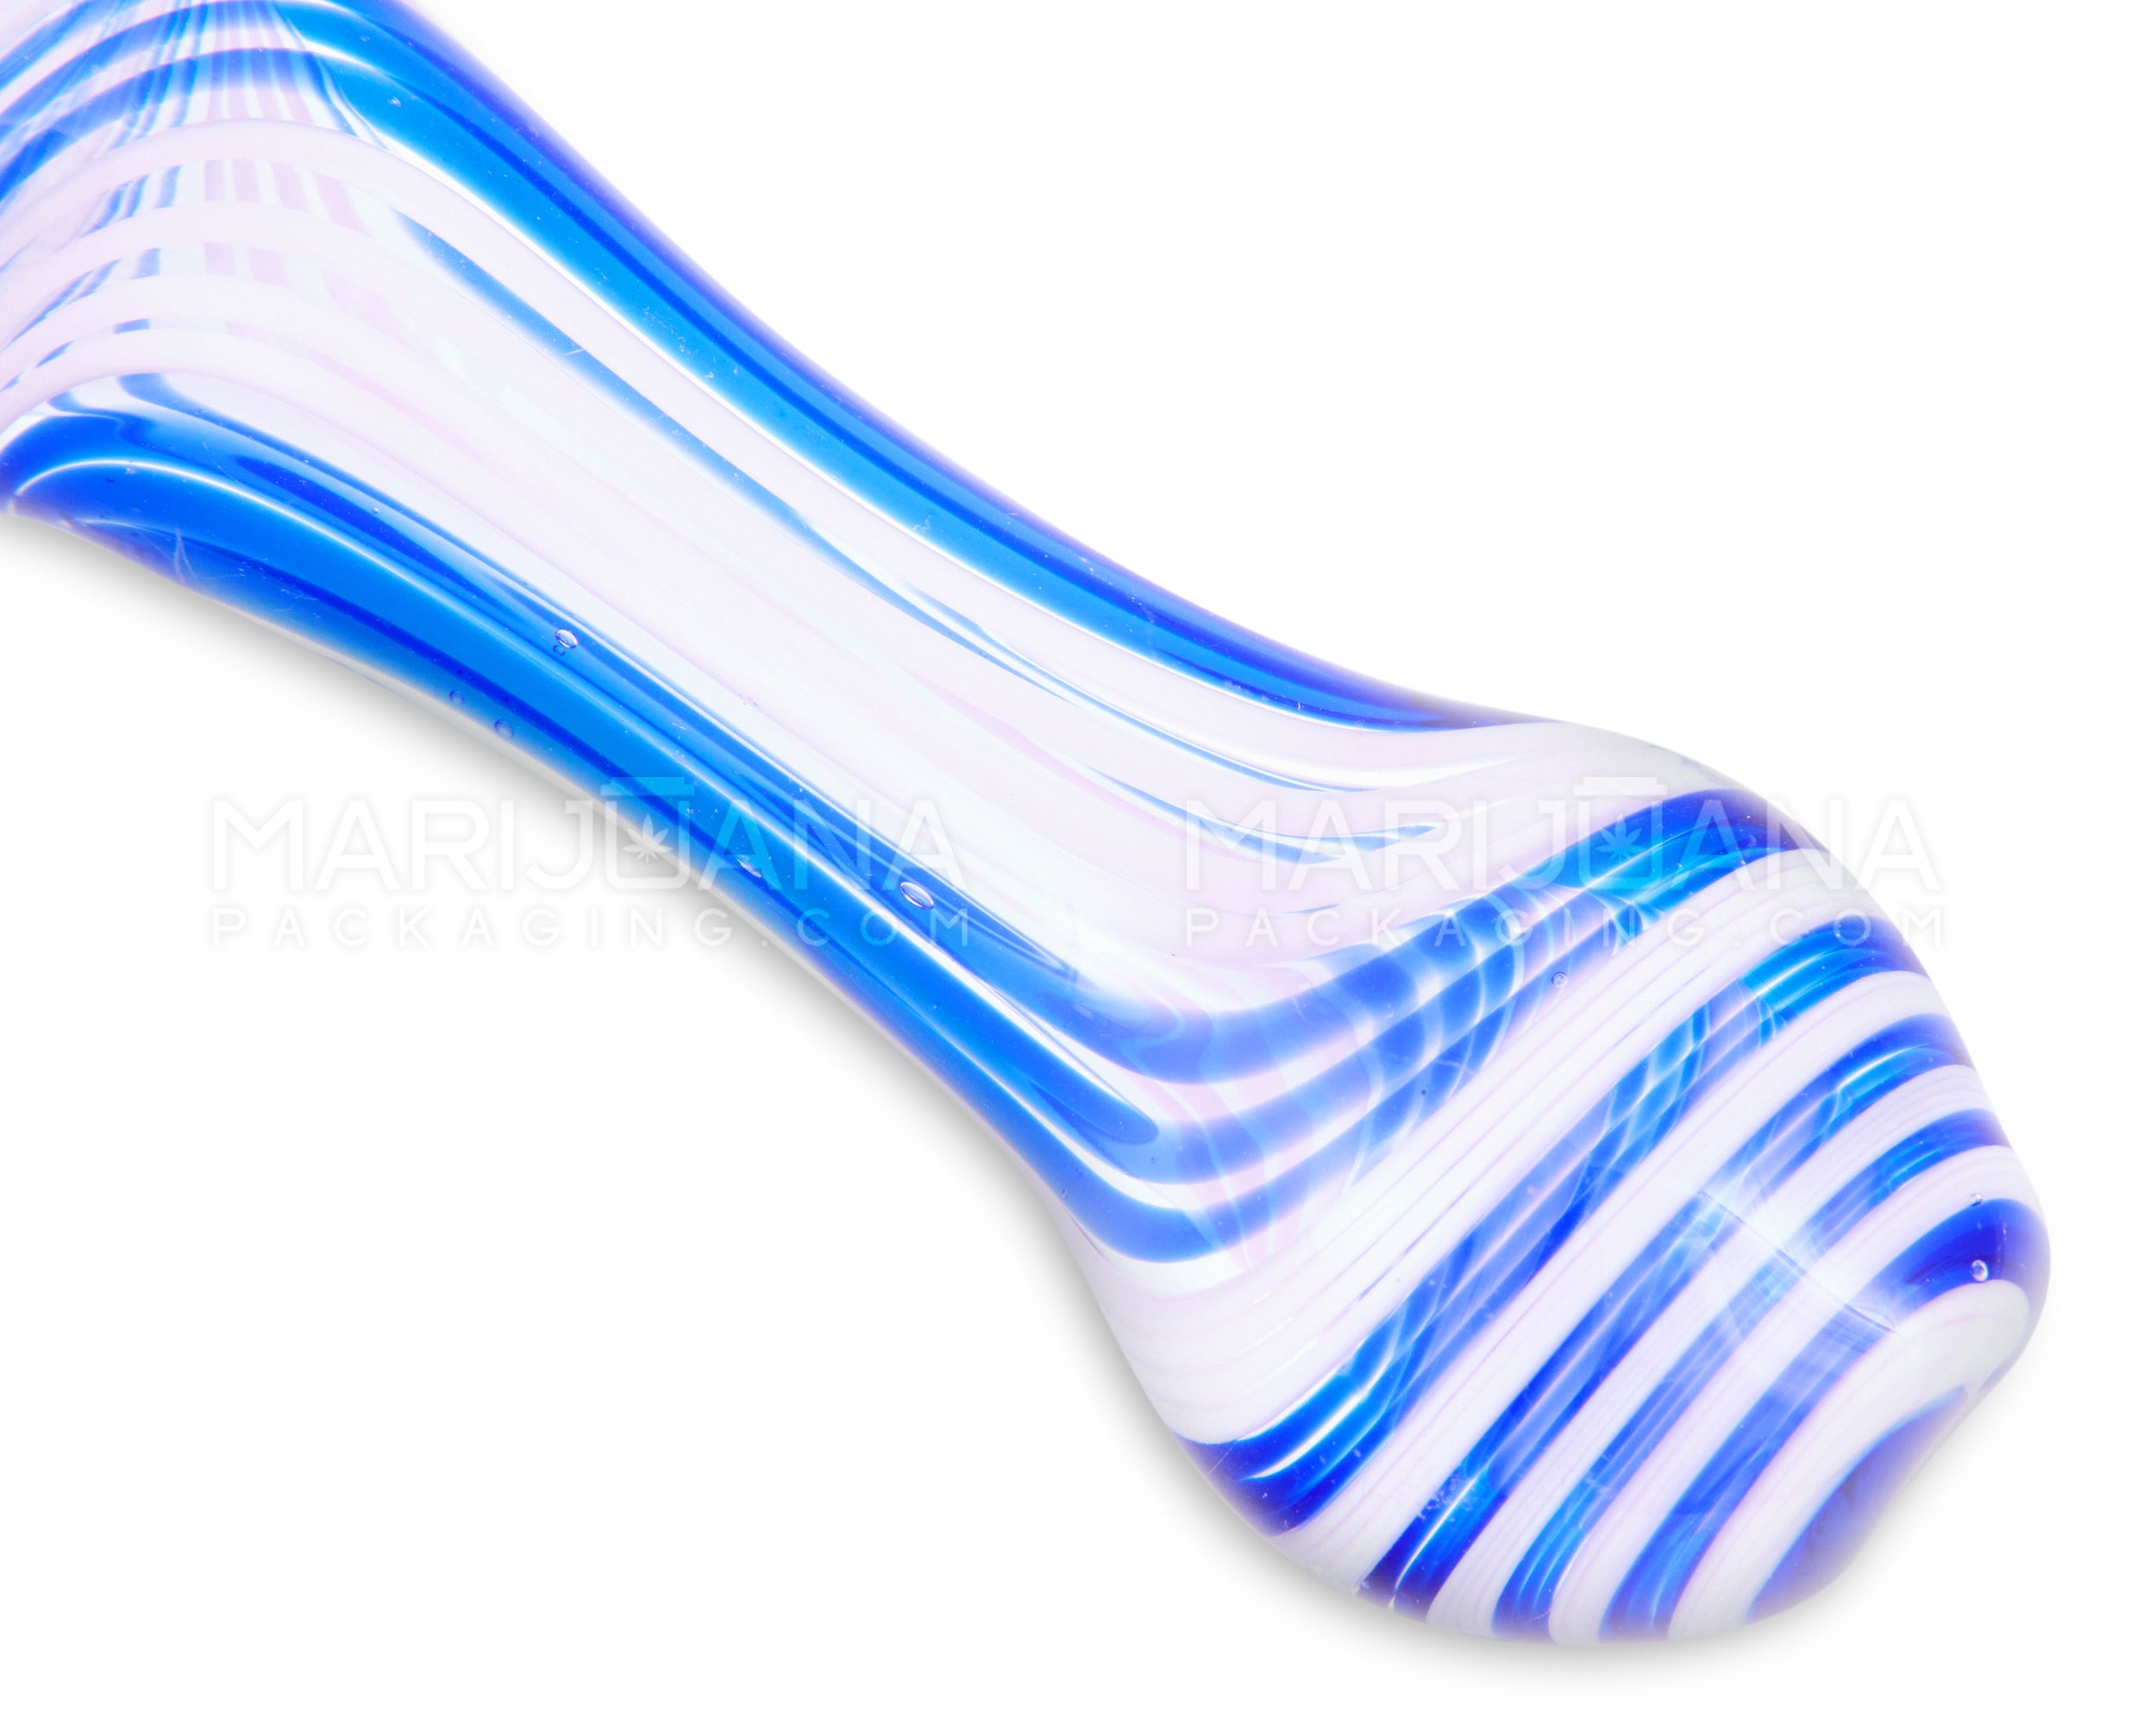 Swirl Spoon Hand Pipe w/ Triple Knockers | 5in Long - Glass - Assorted - 3